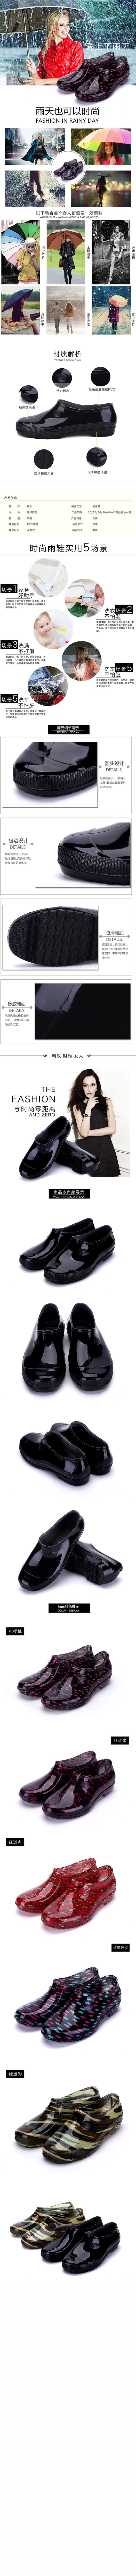 Chaussures - bottes caoutchouc homme pour printemps - semelle plastique - Ref 965428 Image 18